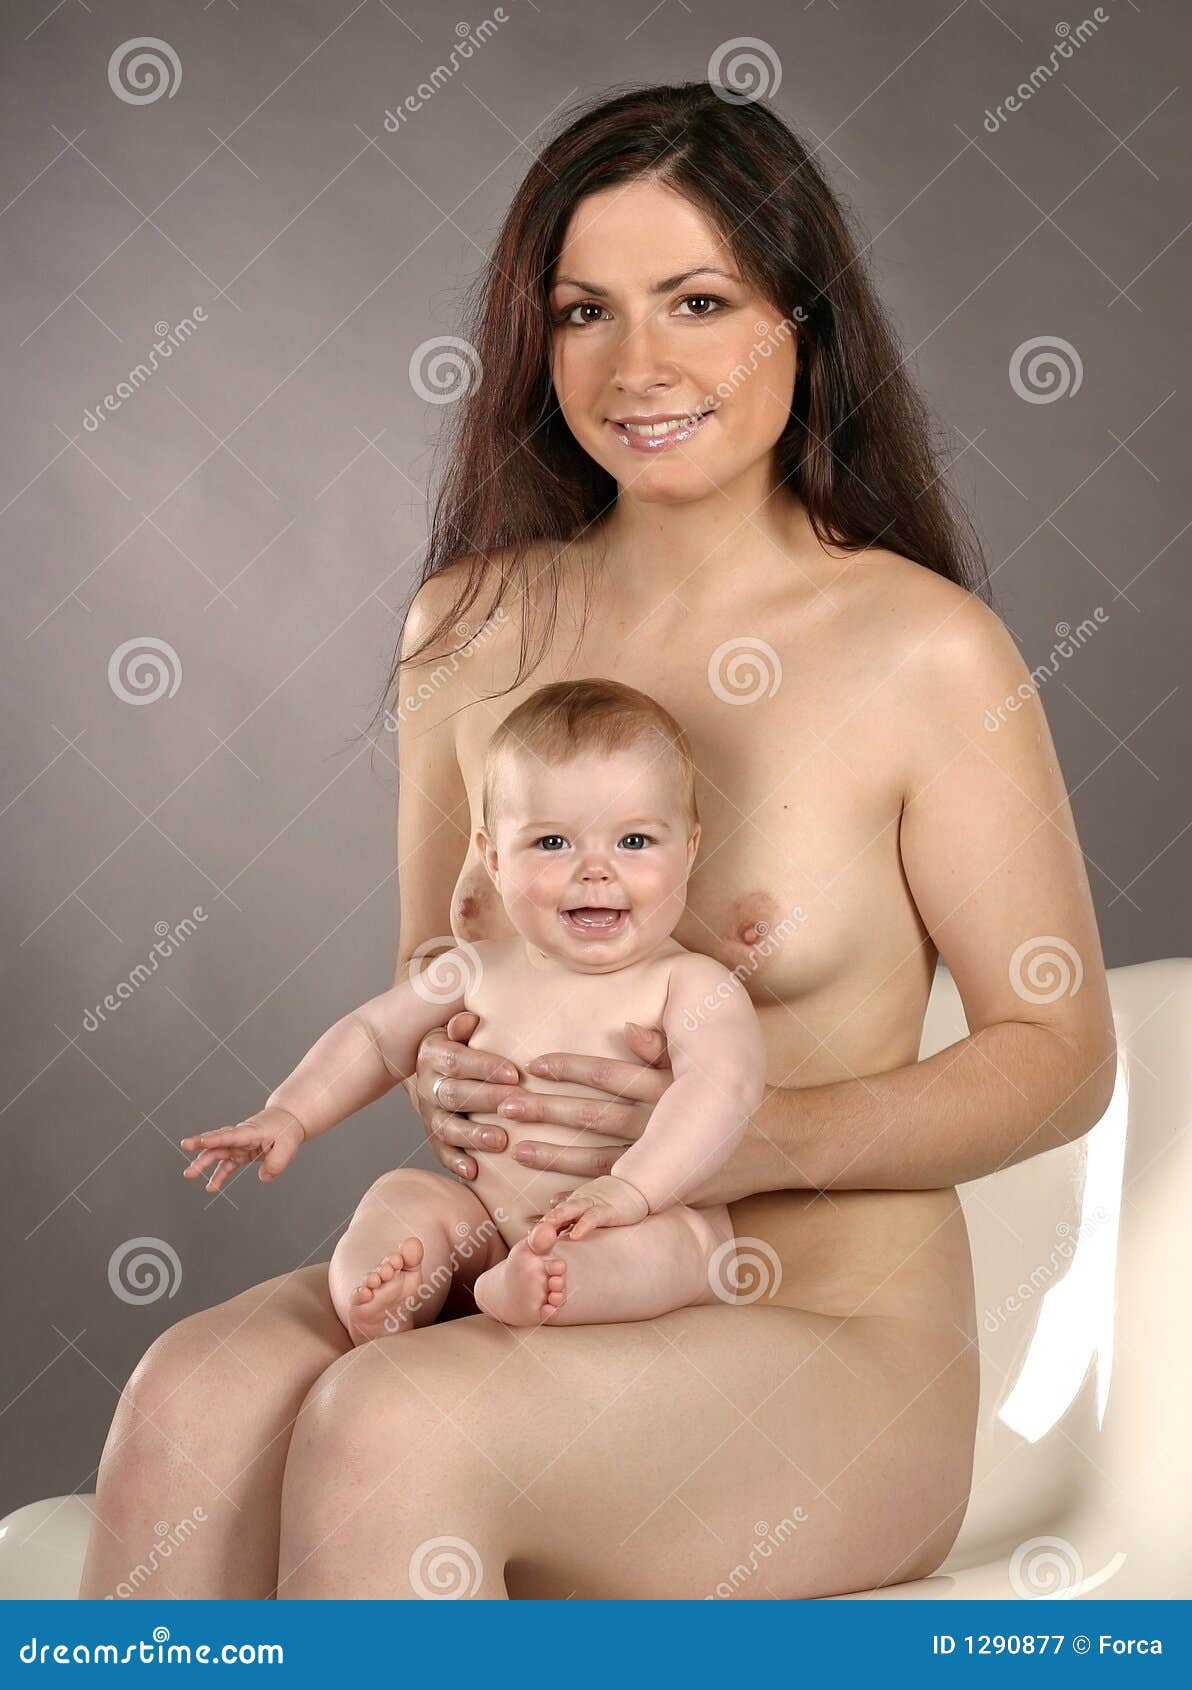 мама фотографирует сына голым фото 90